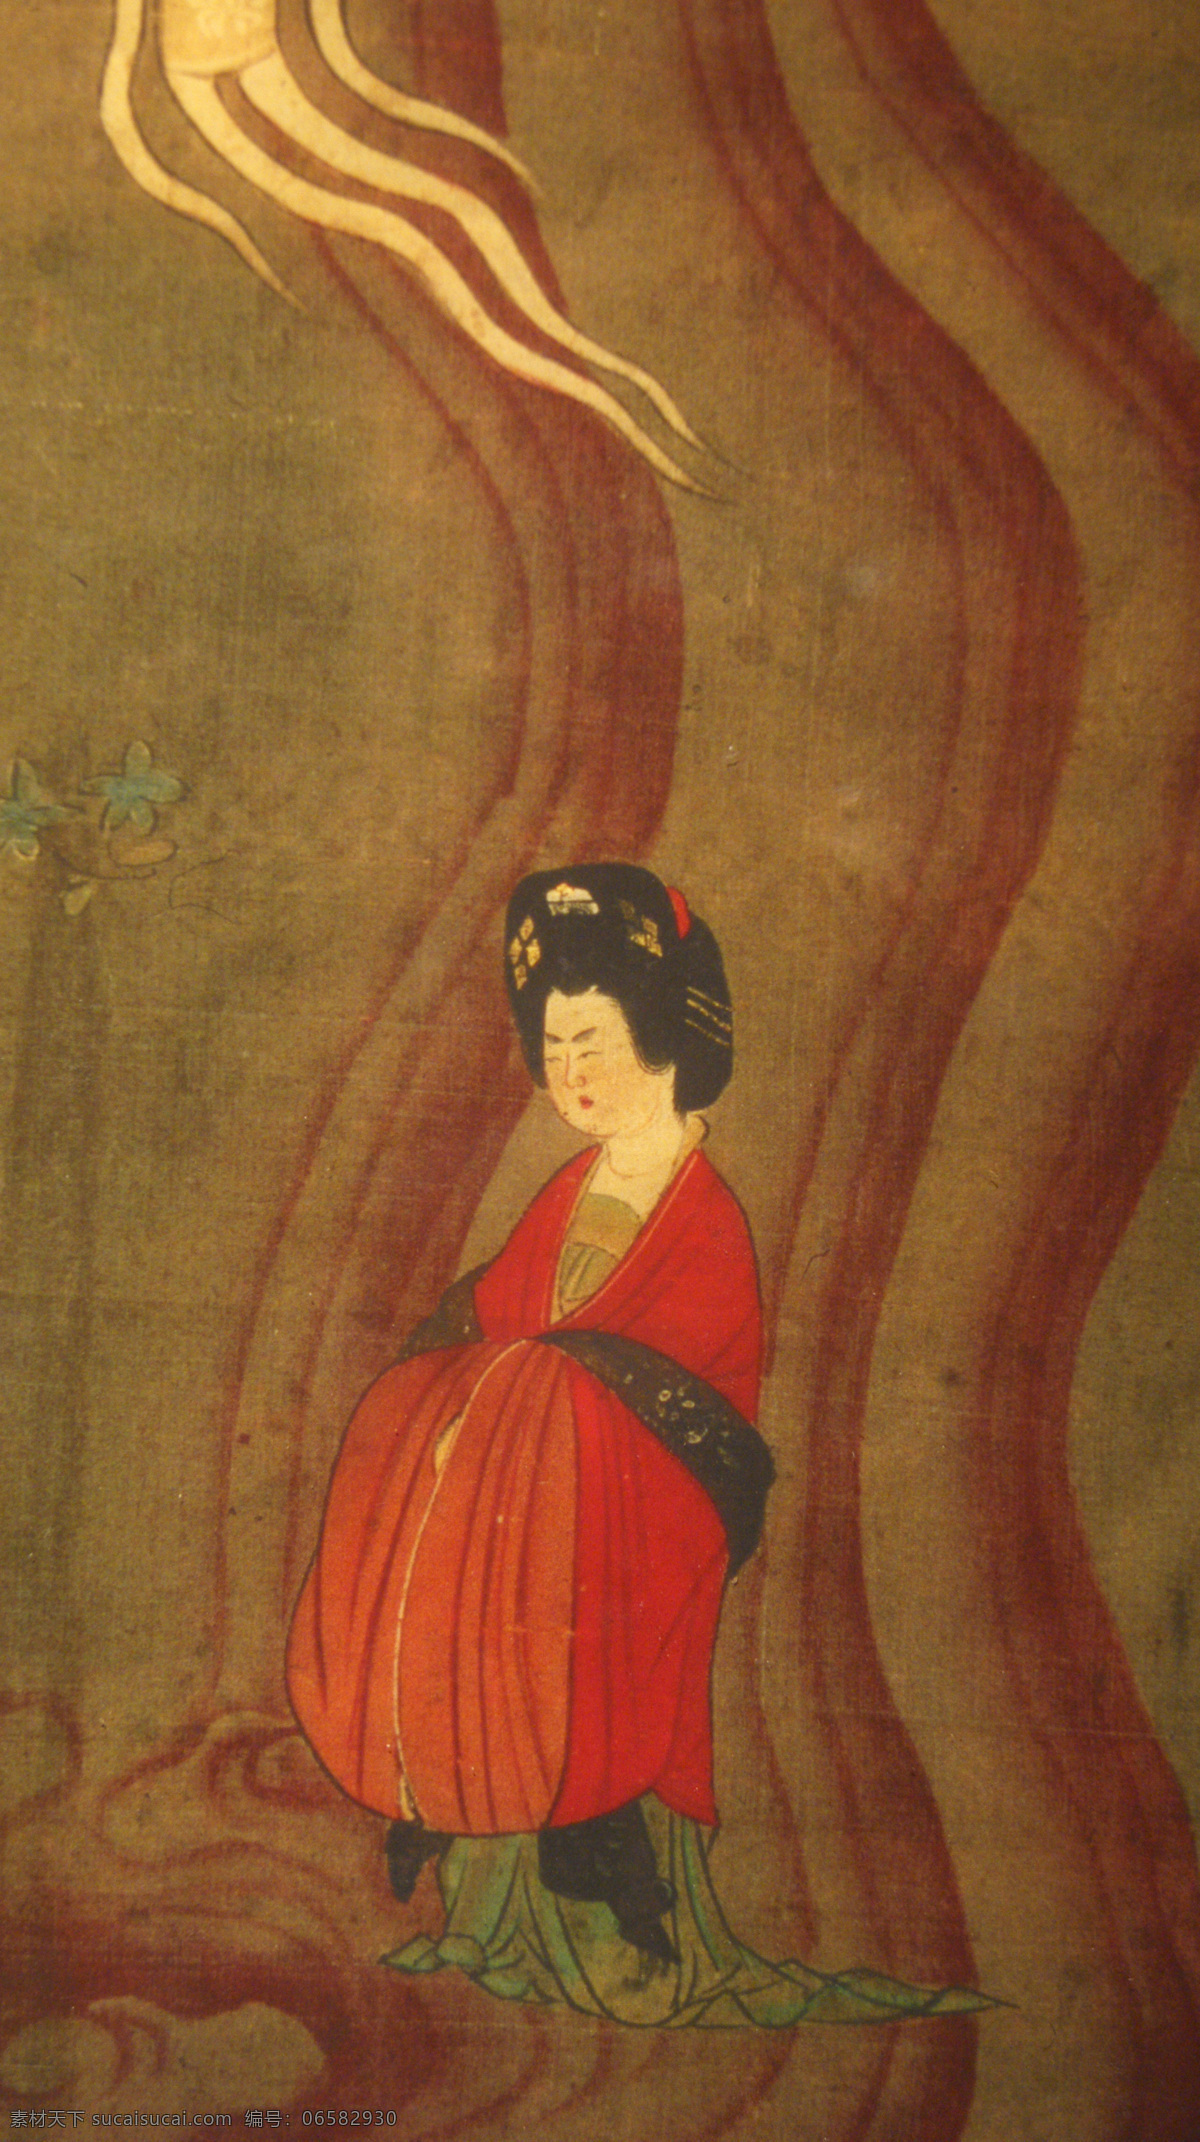 敦煌绘画 中国 传统 艺术 绘画 佛教 敦煌 瑰宝 民族 画像 石窟 洞窟 展览 彩绘 富态美 绘画书法 文化艺术